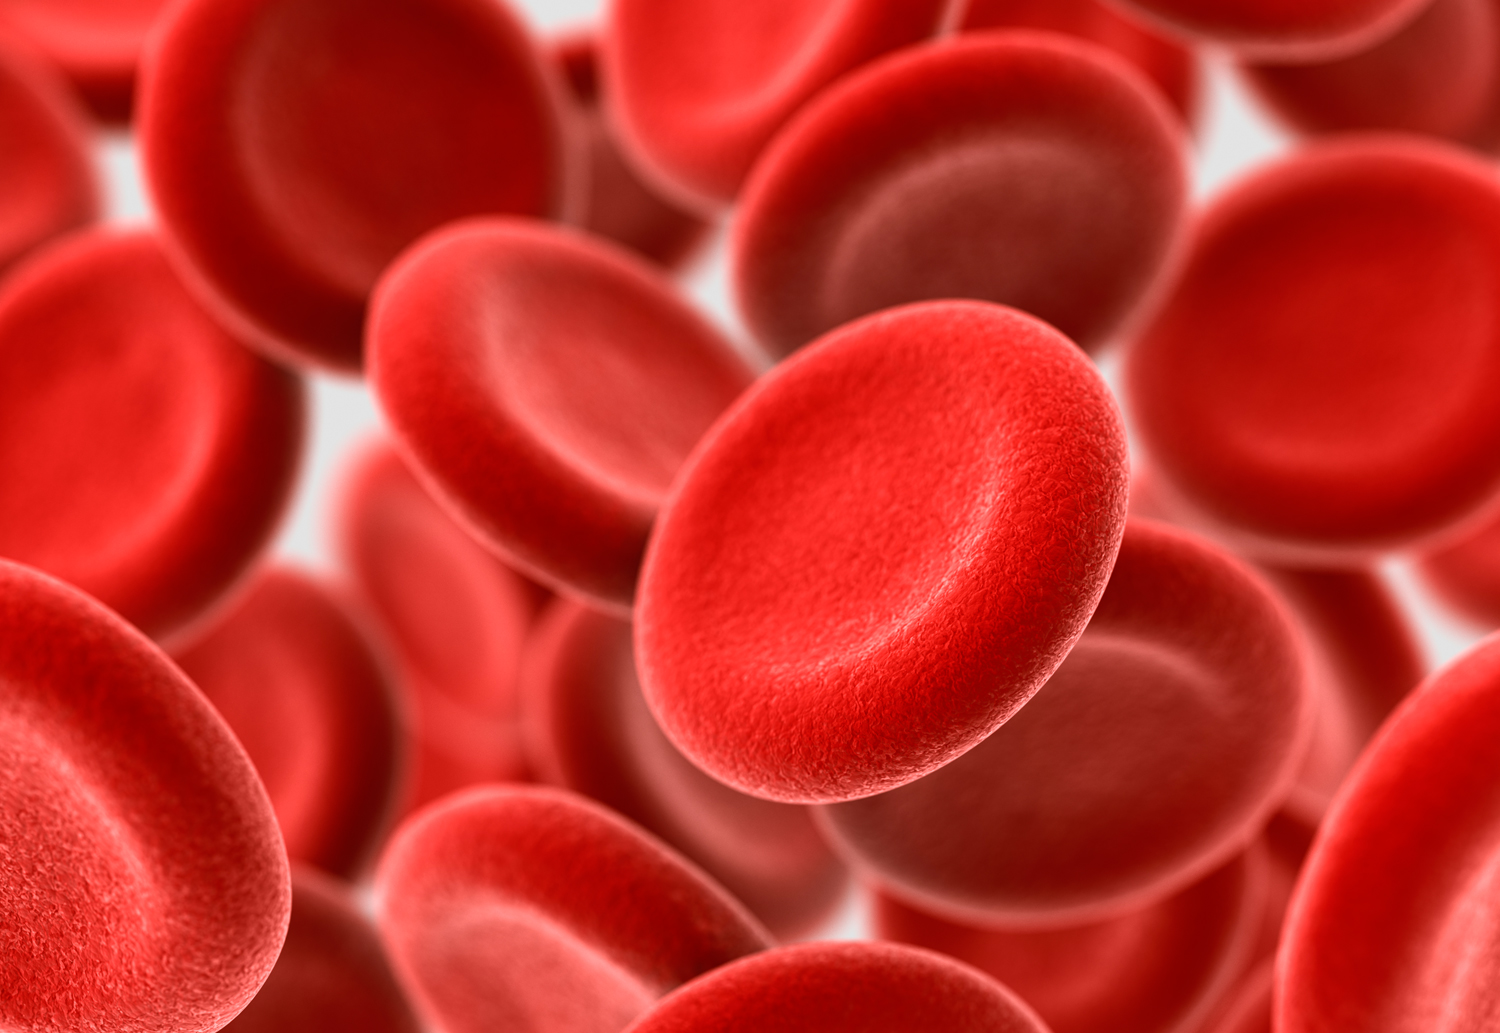 تشخیص بیماری پارکینسون با بررسی میزان کافئین در خون